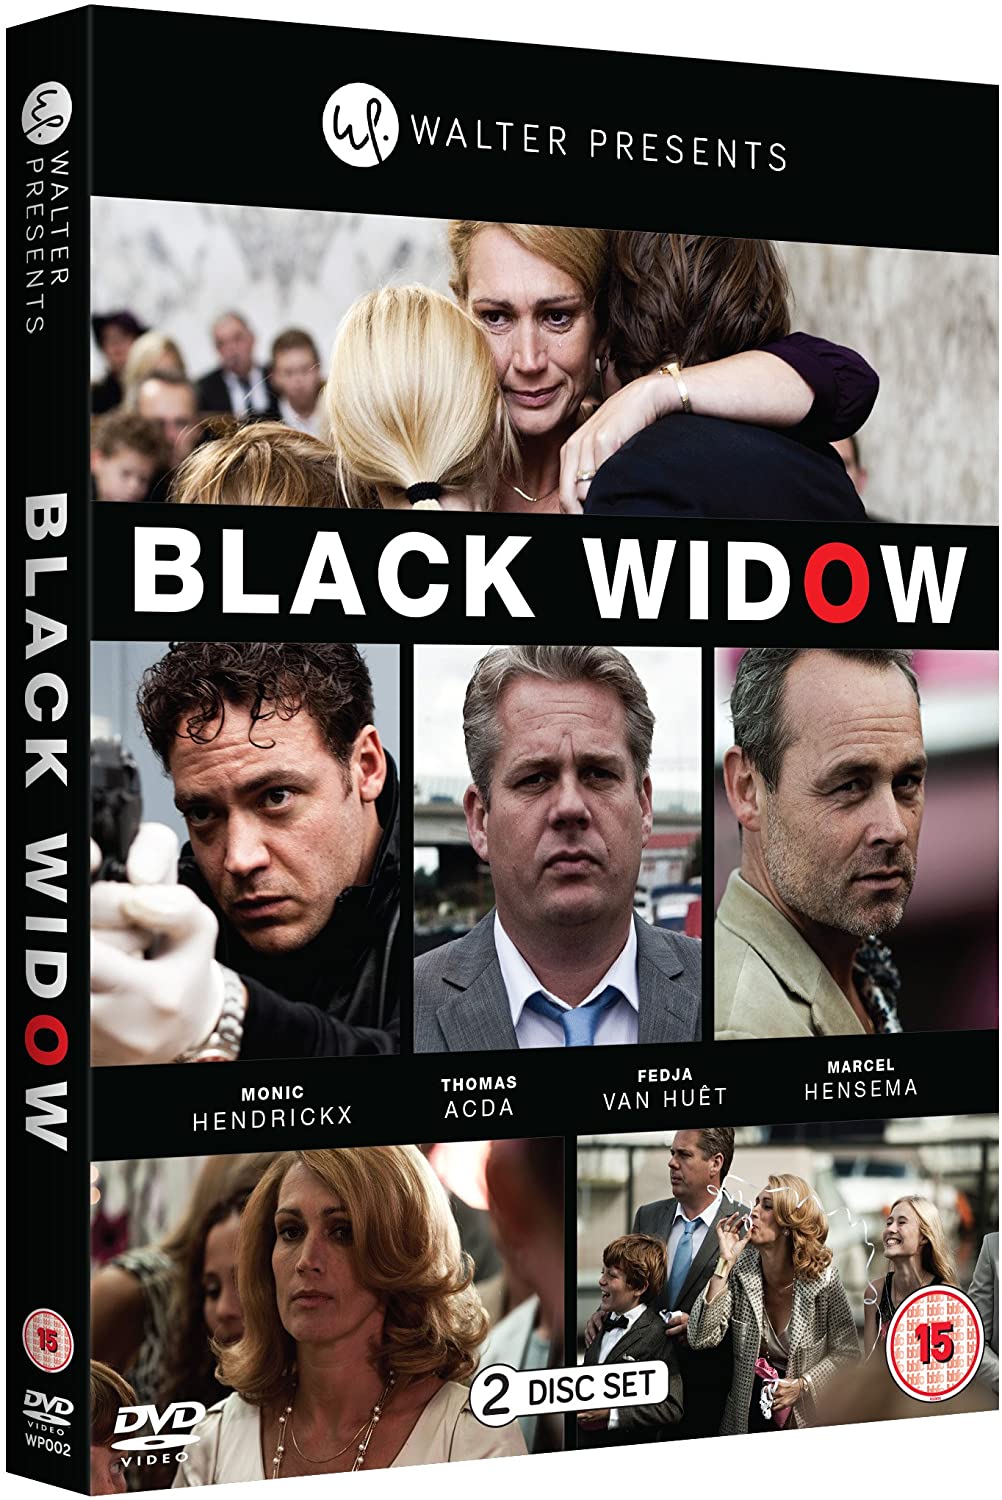 Black Widow Serie 1 – Komödie [DVD]